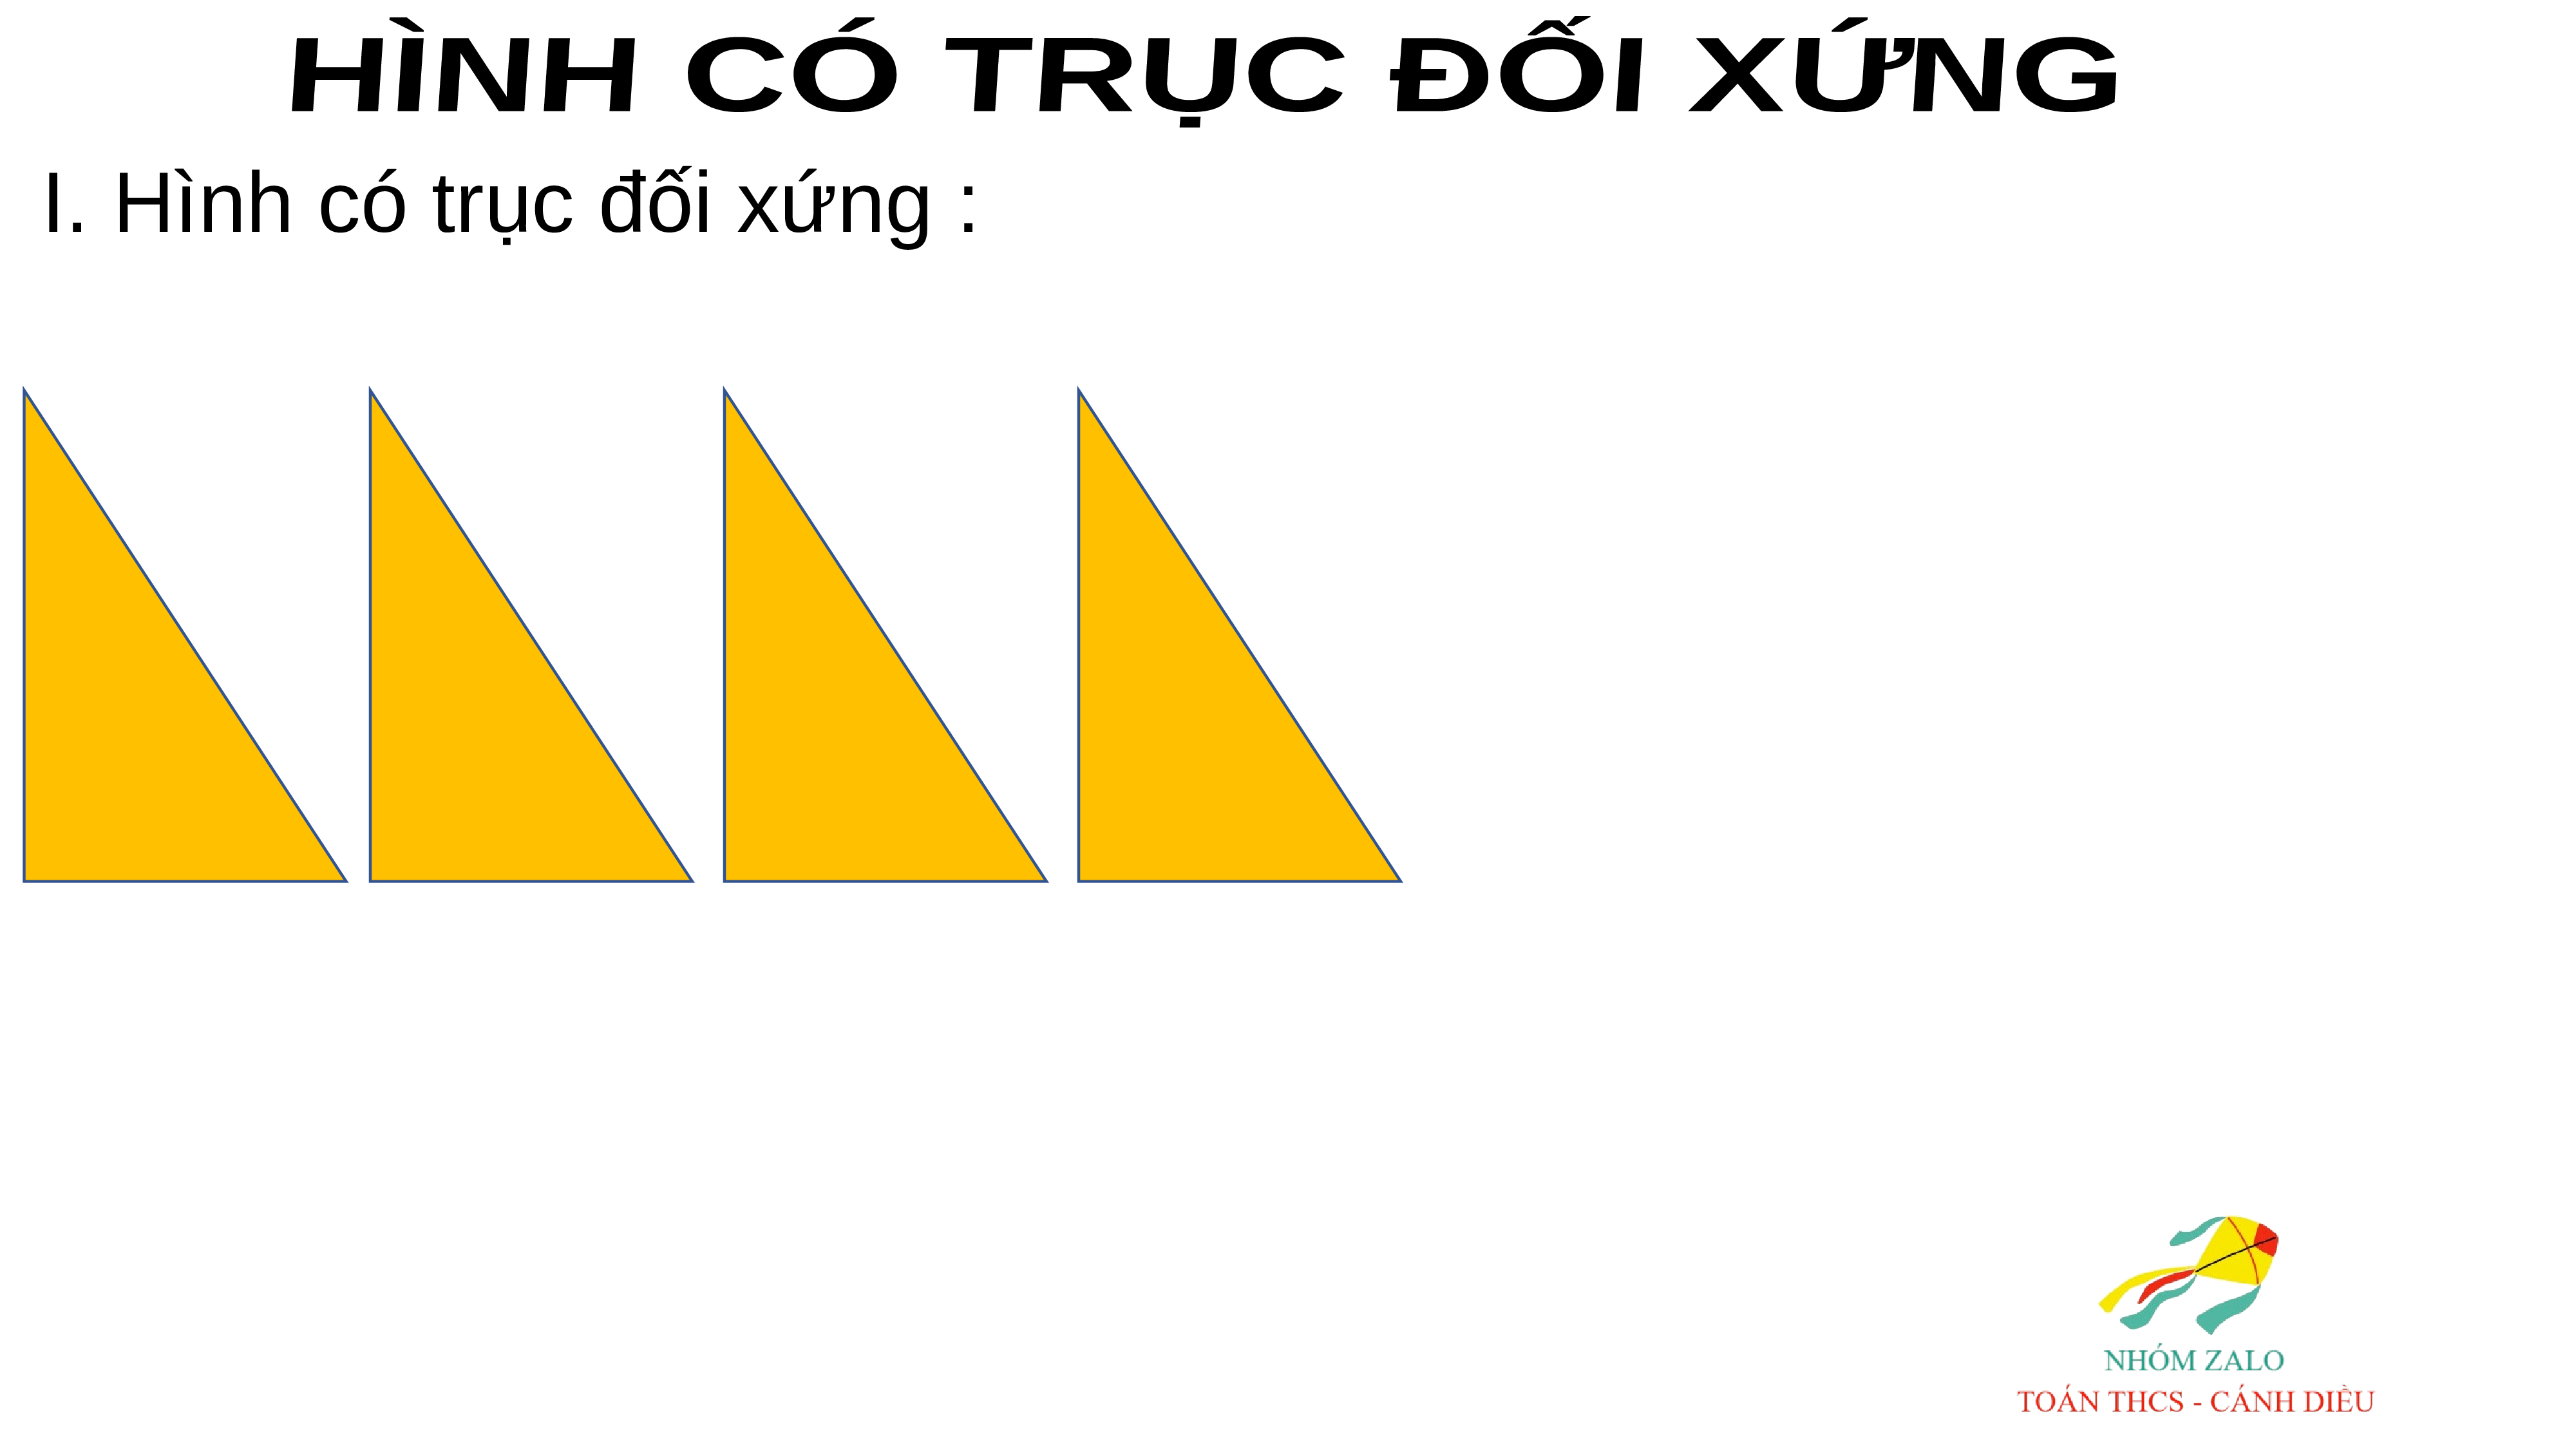 Các hình có trục đối xứng là: A. Hình bình hành, hình chữ nhật, hình vuông  B. Hình thang cân, tam giác cân, hình thoi C. Tam giác cân, hình bình hành,